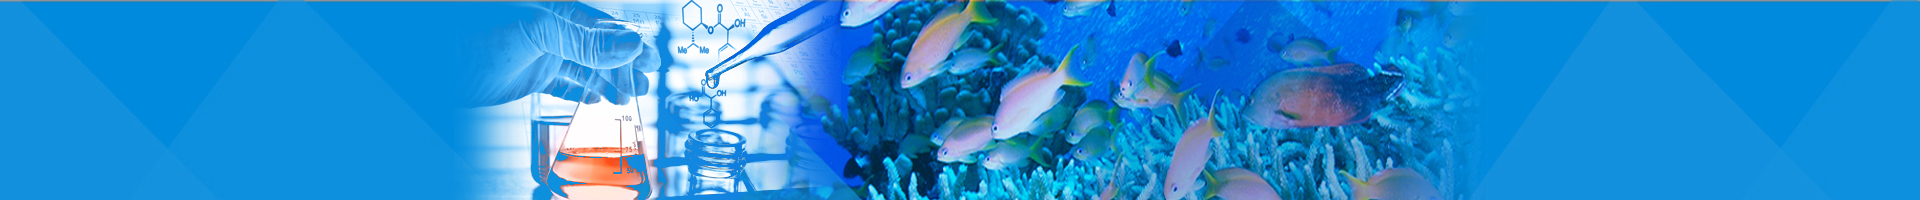 韓國樂天水族館(Lotte World Aquarium) 簽訂雙方合作備忘錄